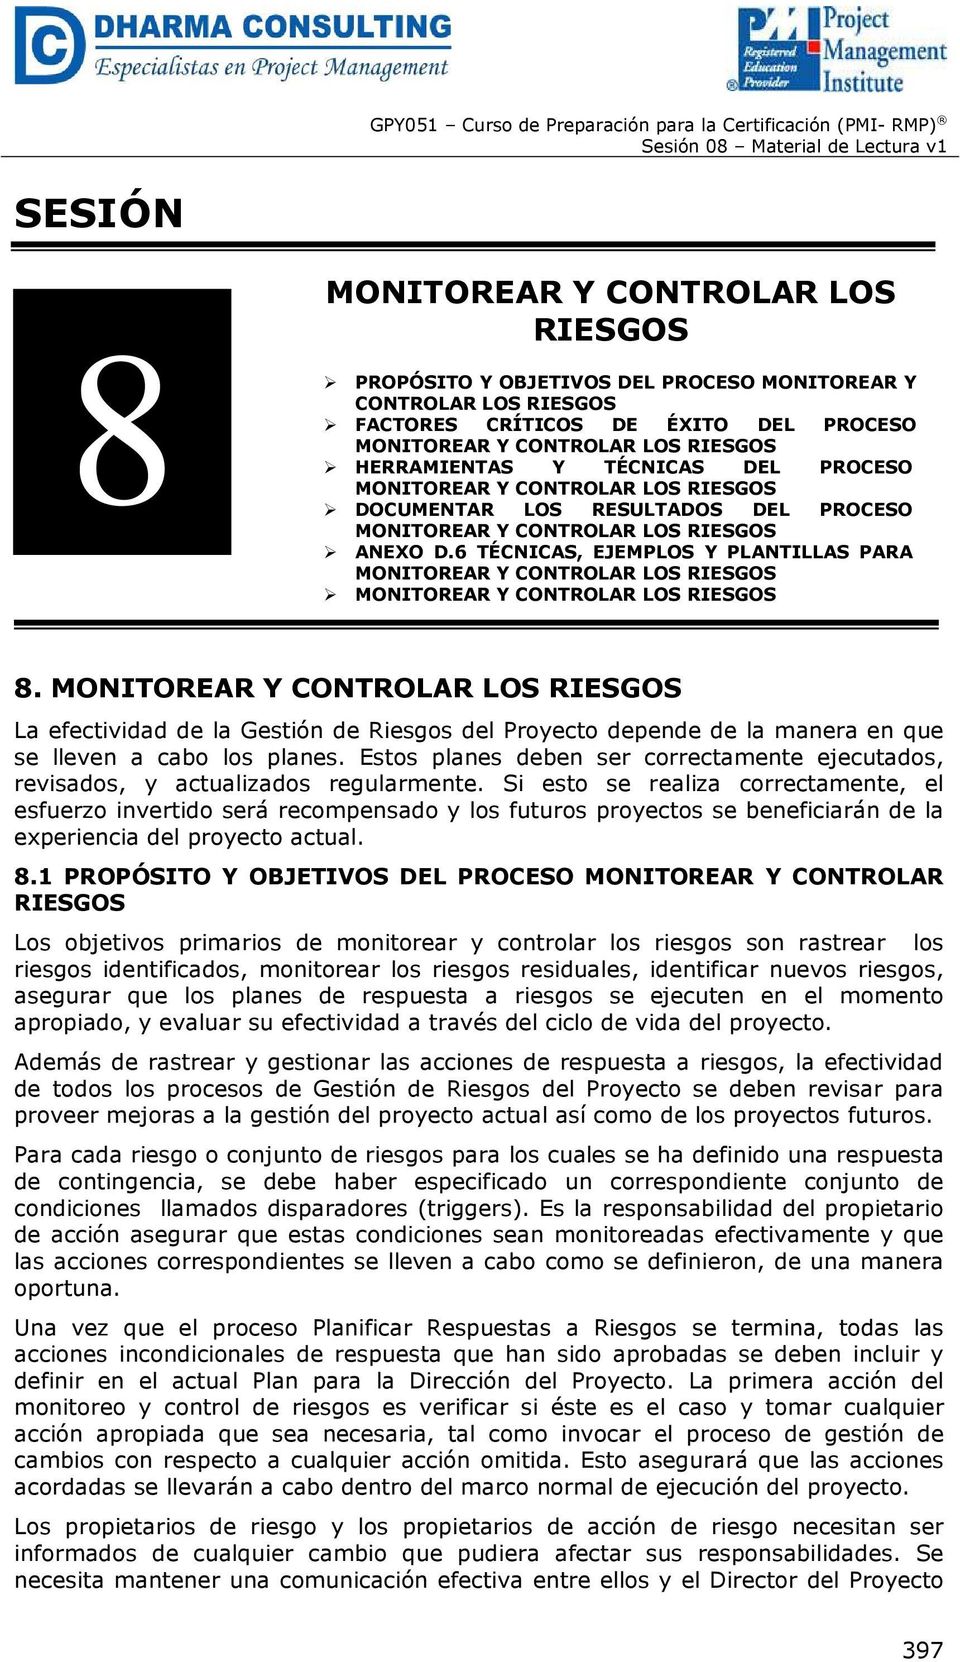 6 TÉCNICAS, EJEMPLOS Y PLANTILLAS PARA MONITOREAR Y CONTROLAR LOS RIESGOS MONITOREAR Y CONTROLAR LOS RIESGOS 8.